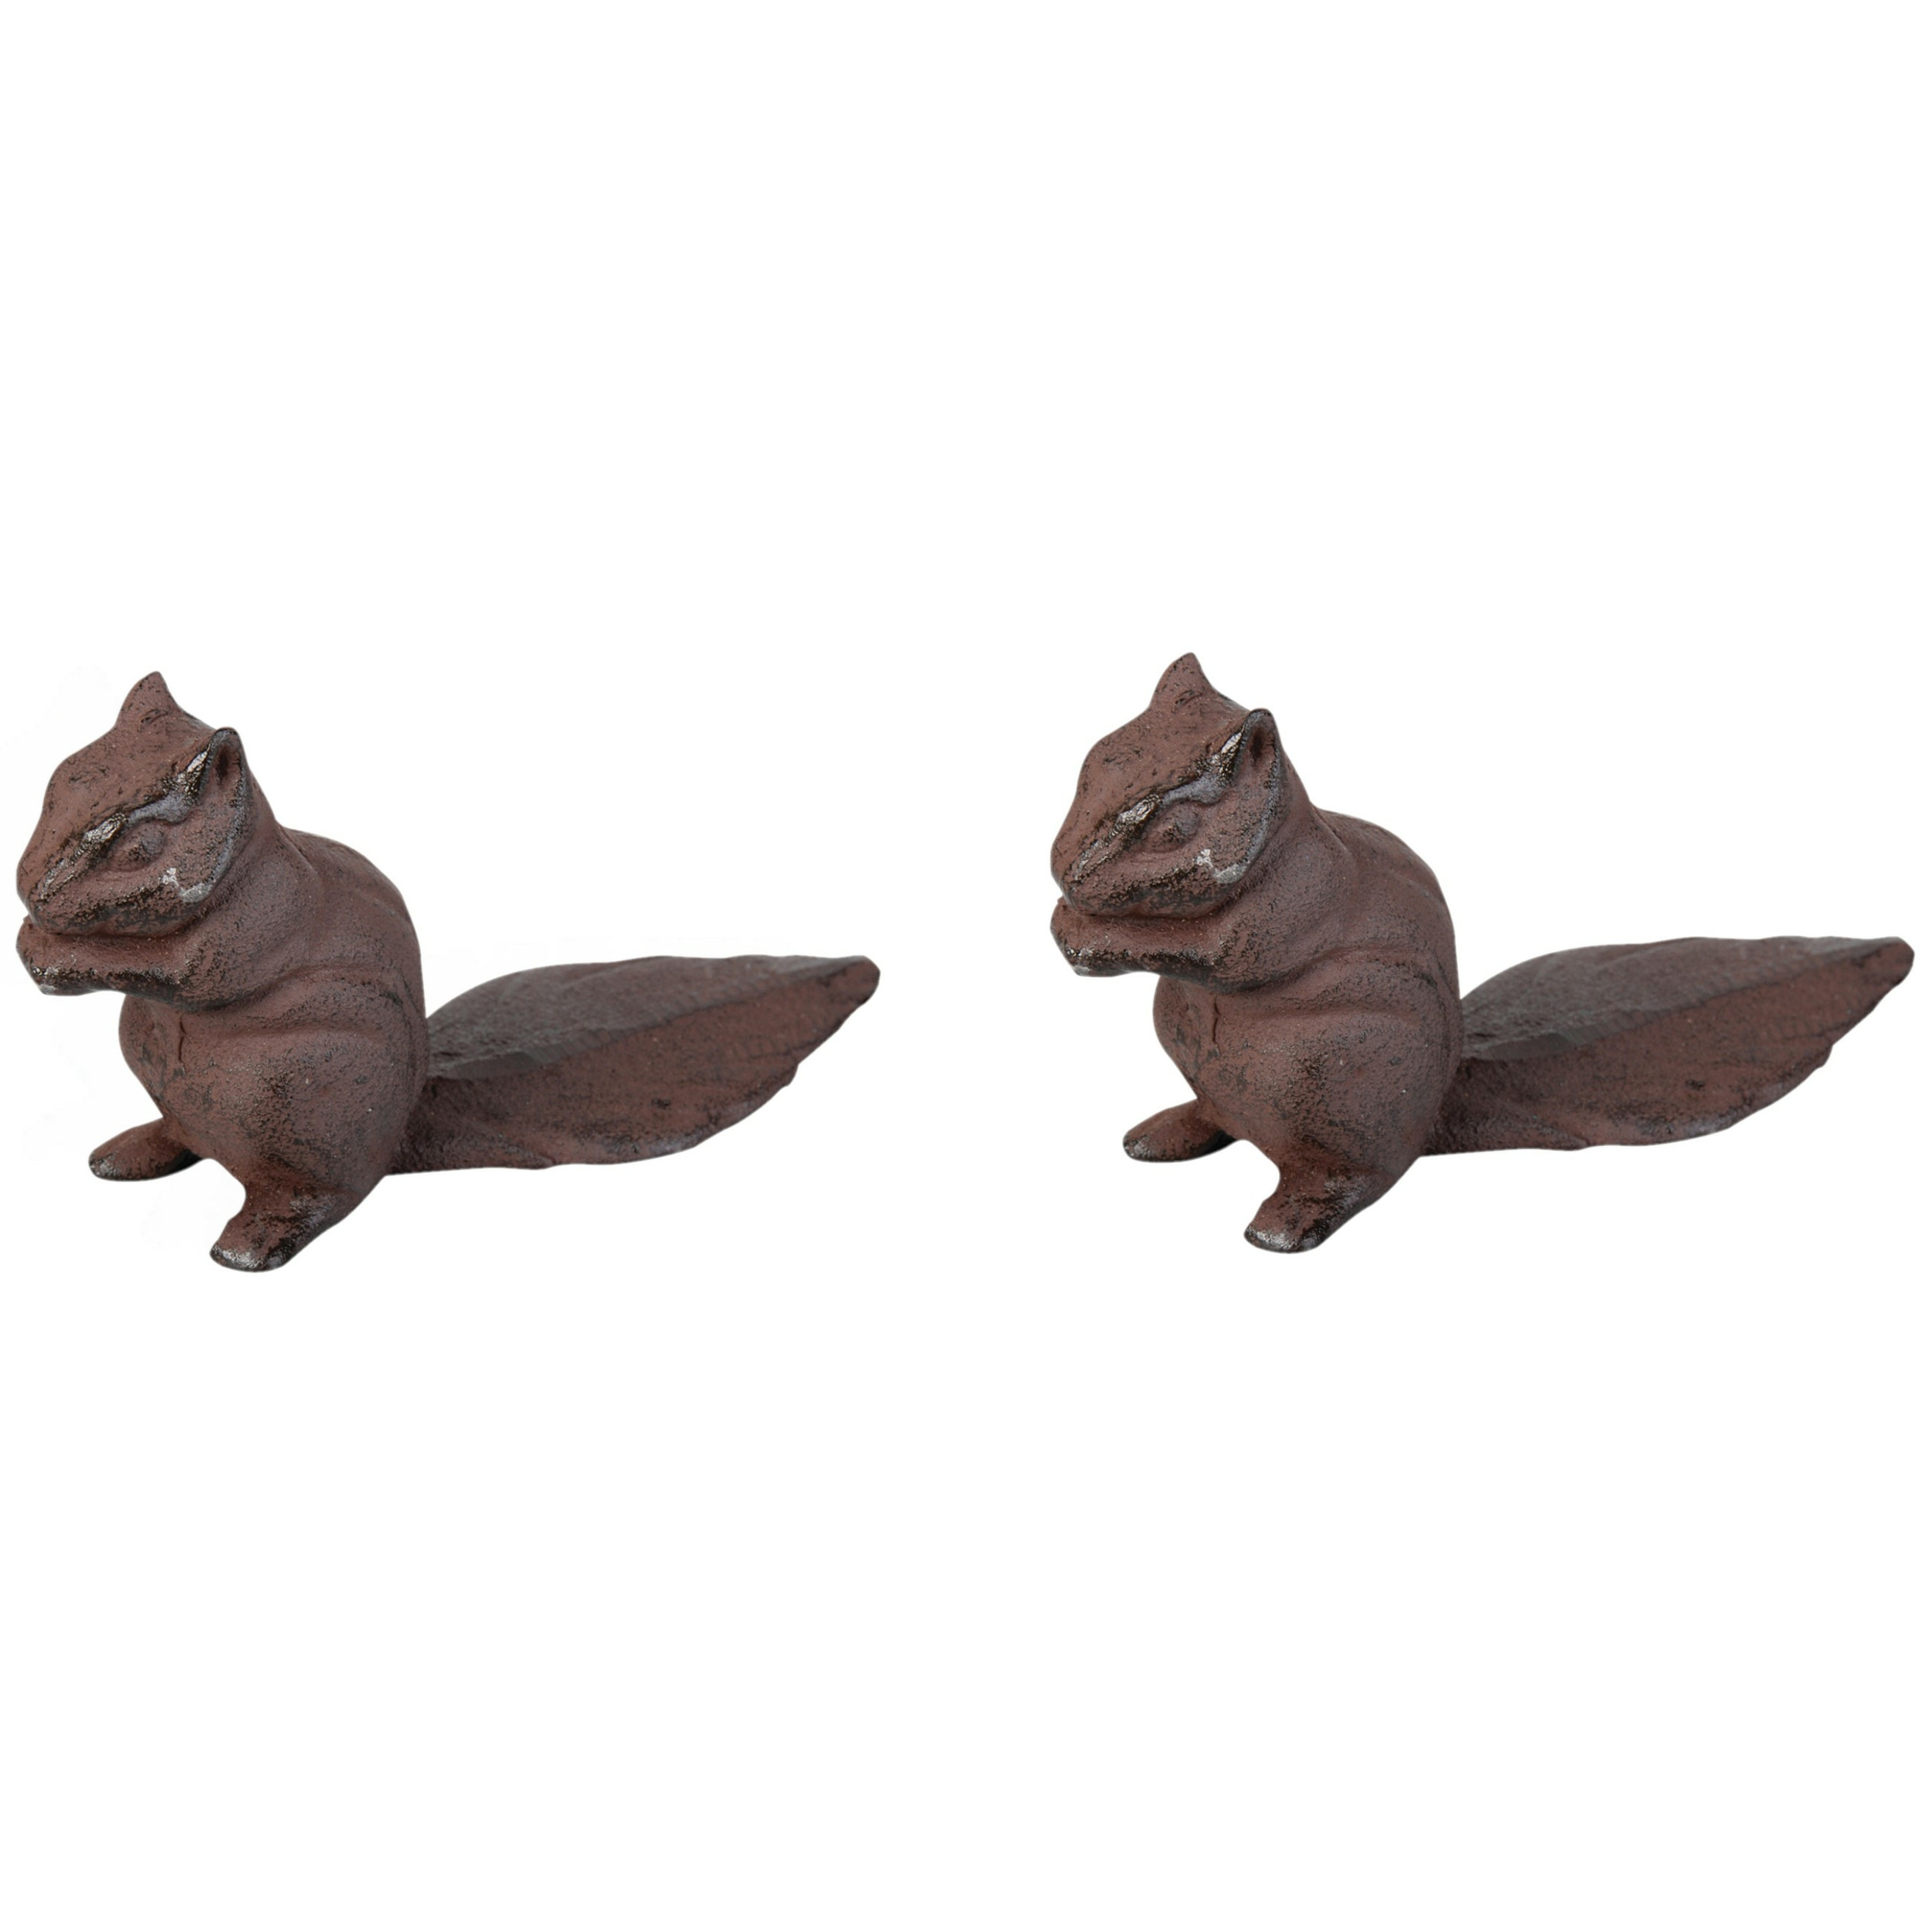 Deurstopper eekhoorn - 2x - 0.6 kg - gietijzer - bruin - 18 x 6 x 10 cm -